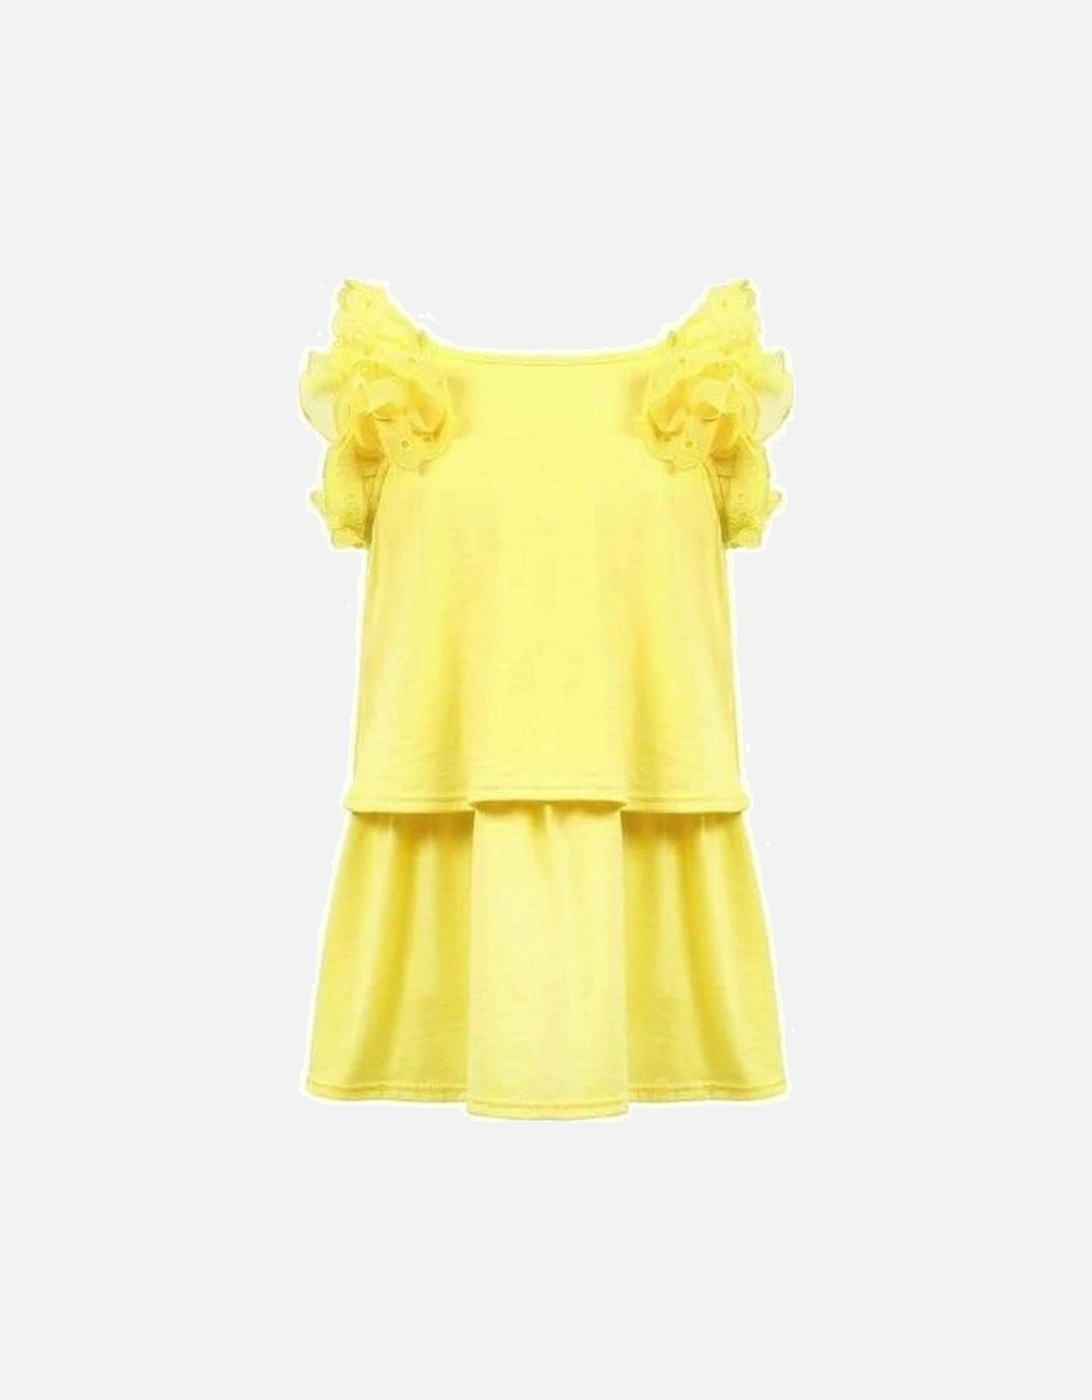 Girls Yellow Dress, 3 of 2